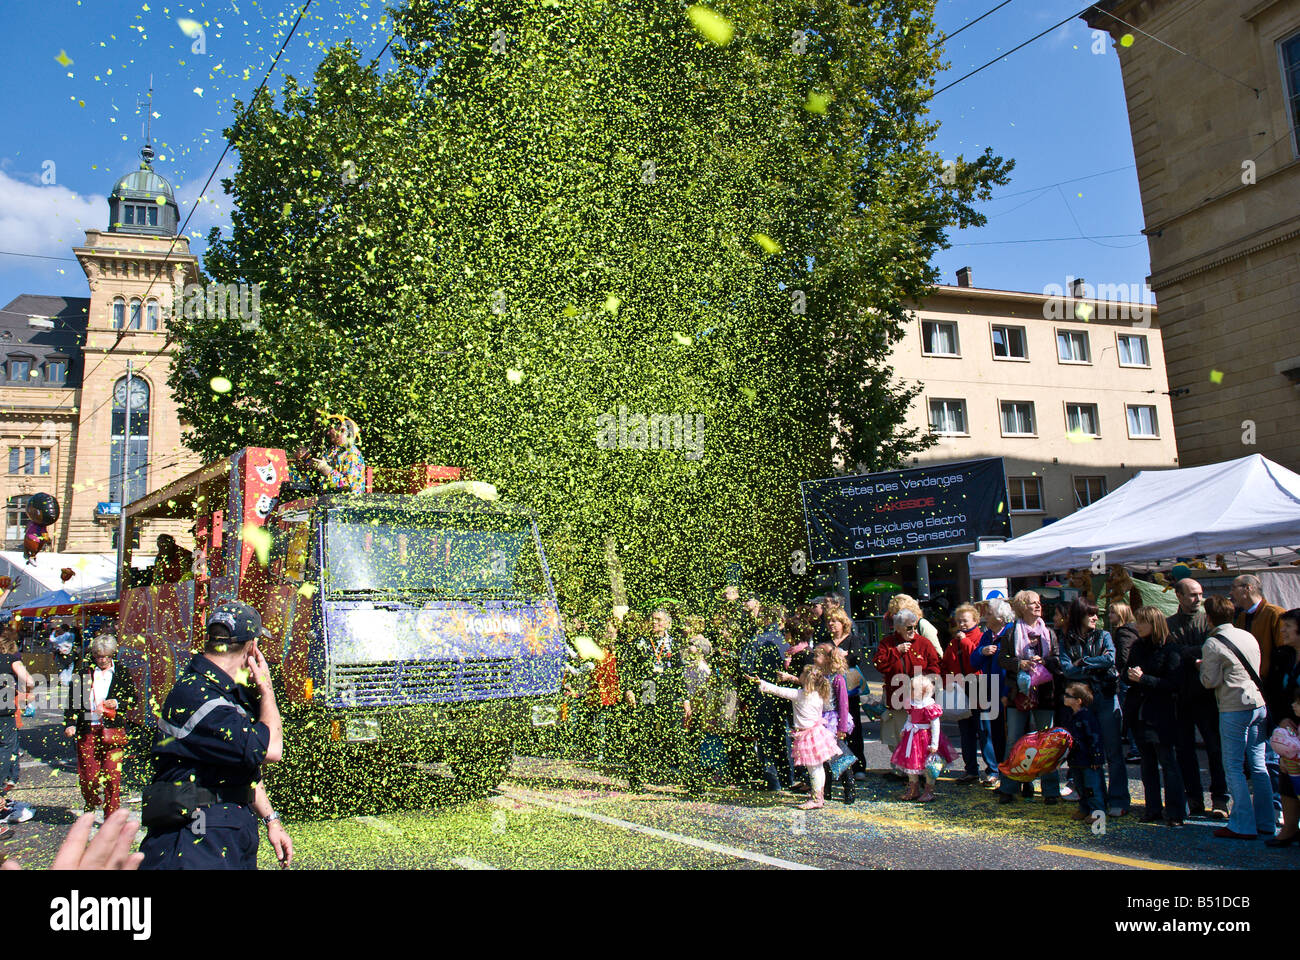 Cañones de confeti lanzando confeti hacia la multitud en un festival de  música Fotografía de stock - Alamy